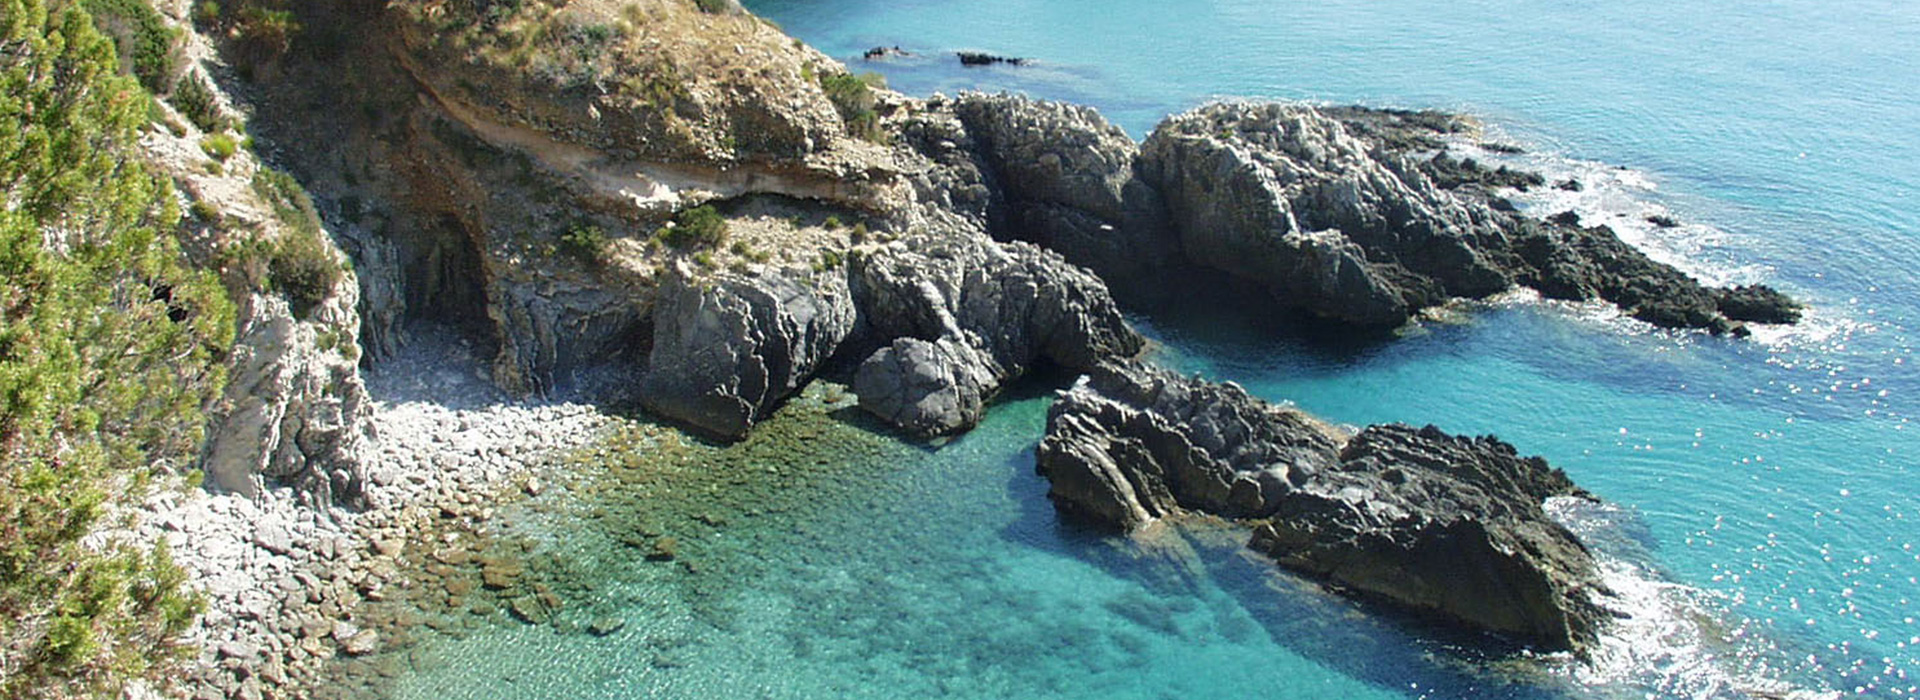 Klippen von Ascea, Meer mit Blauer Flagge